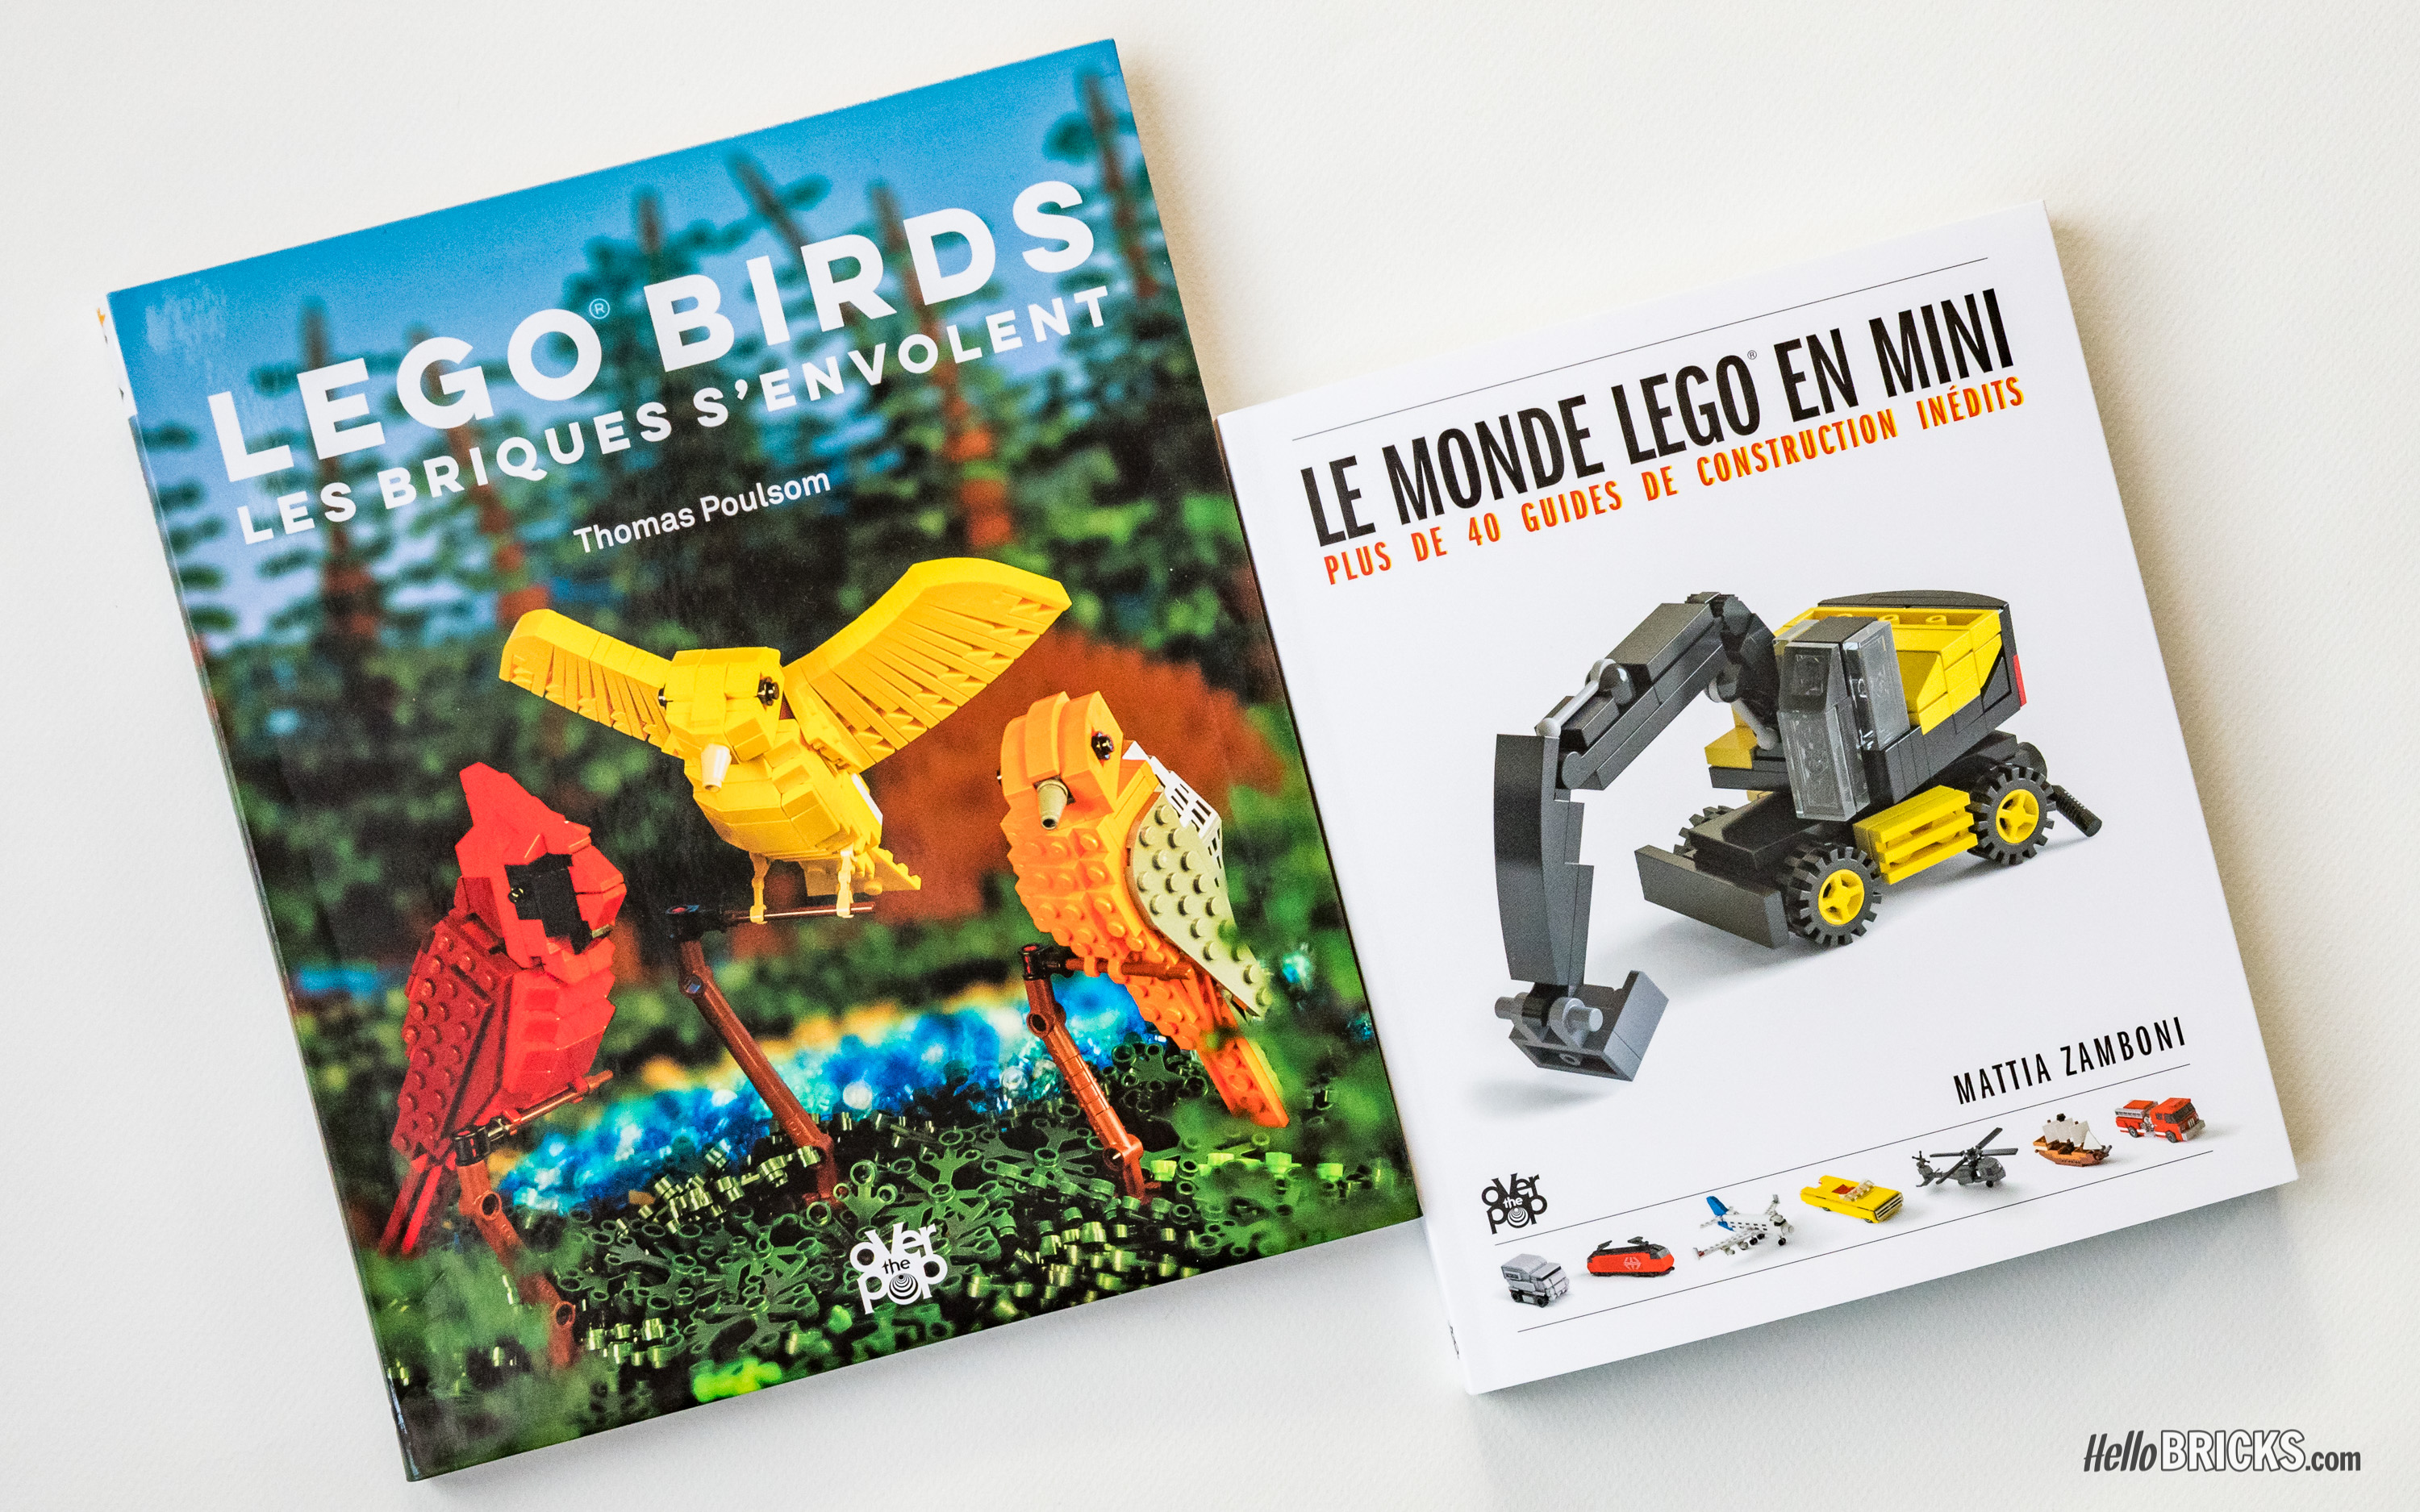 Le monde Lego en mini ; plus de 40 guides de construction inédits